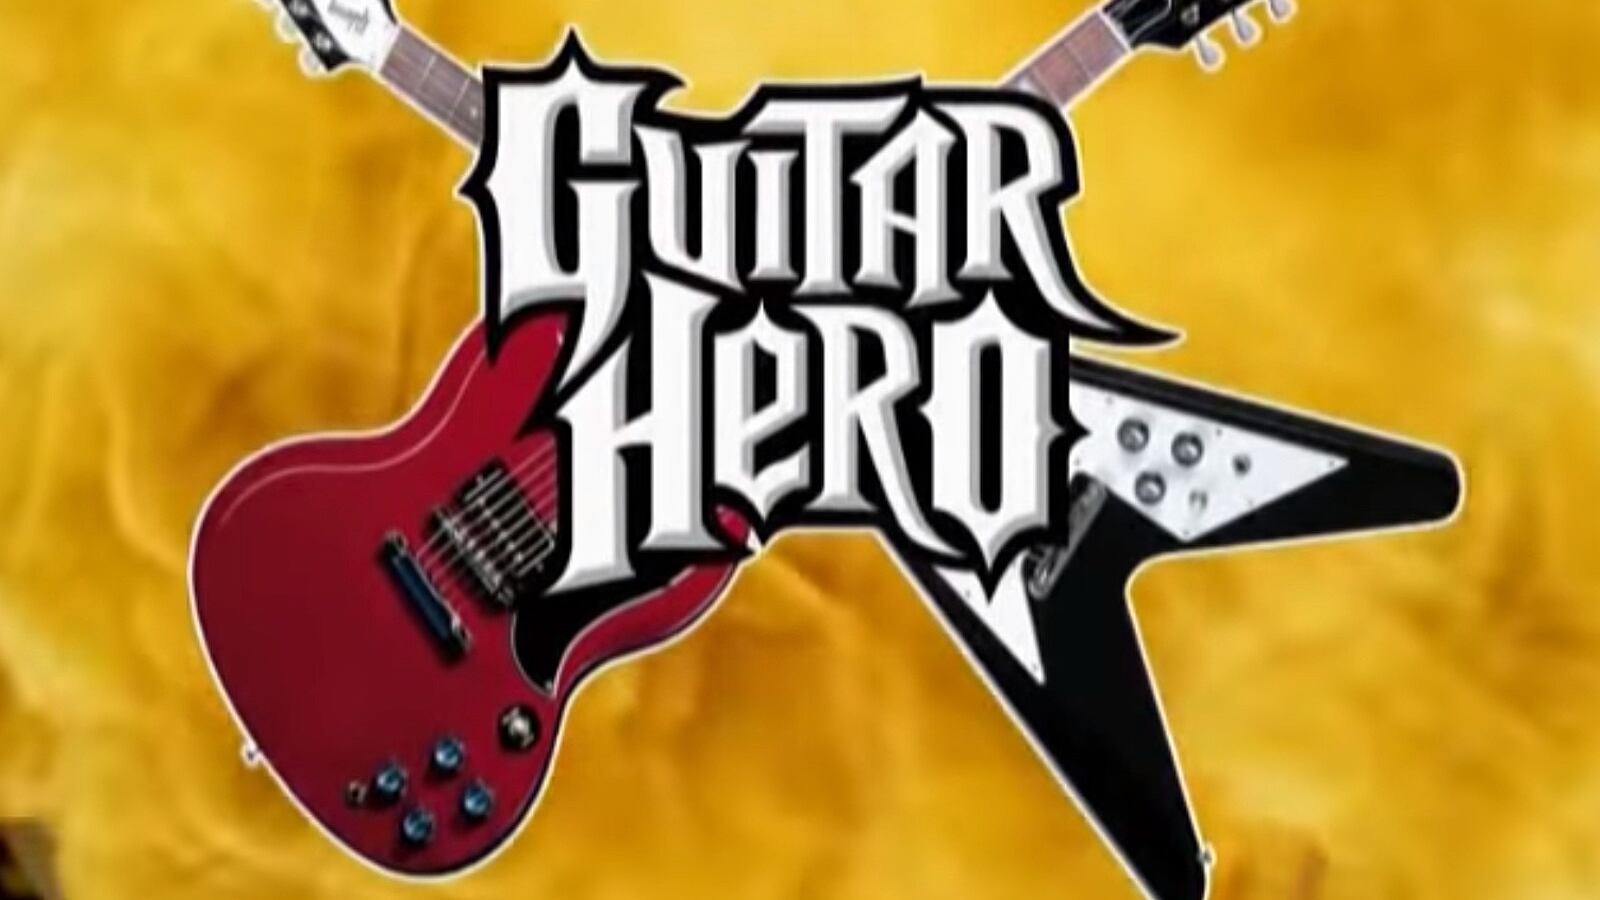 Parece que Microsoft planea la resurrección de la franquicia de Guitar Hero. Así lo sugieren fuertes rumore sobre planes para su regreso en la Xbox.